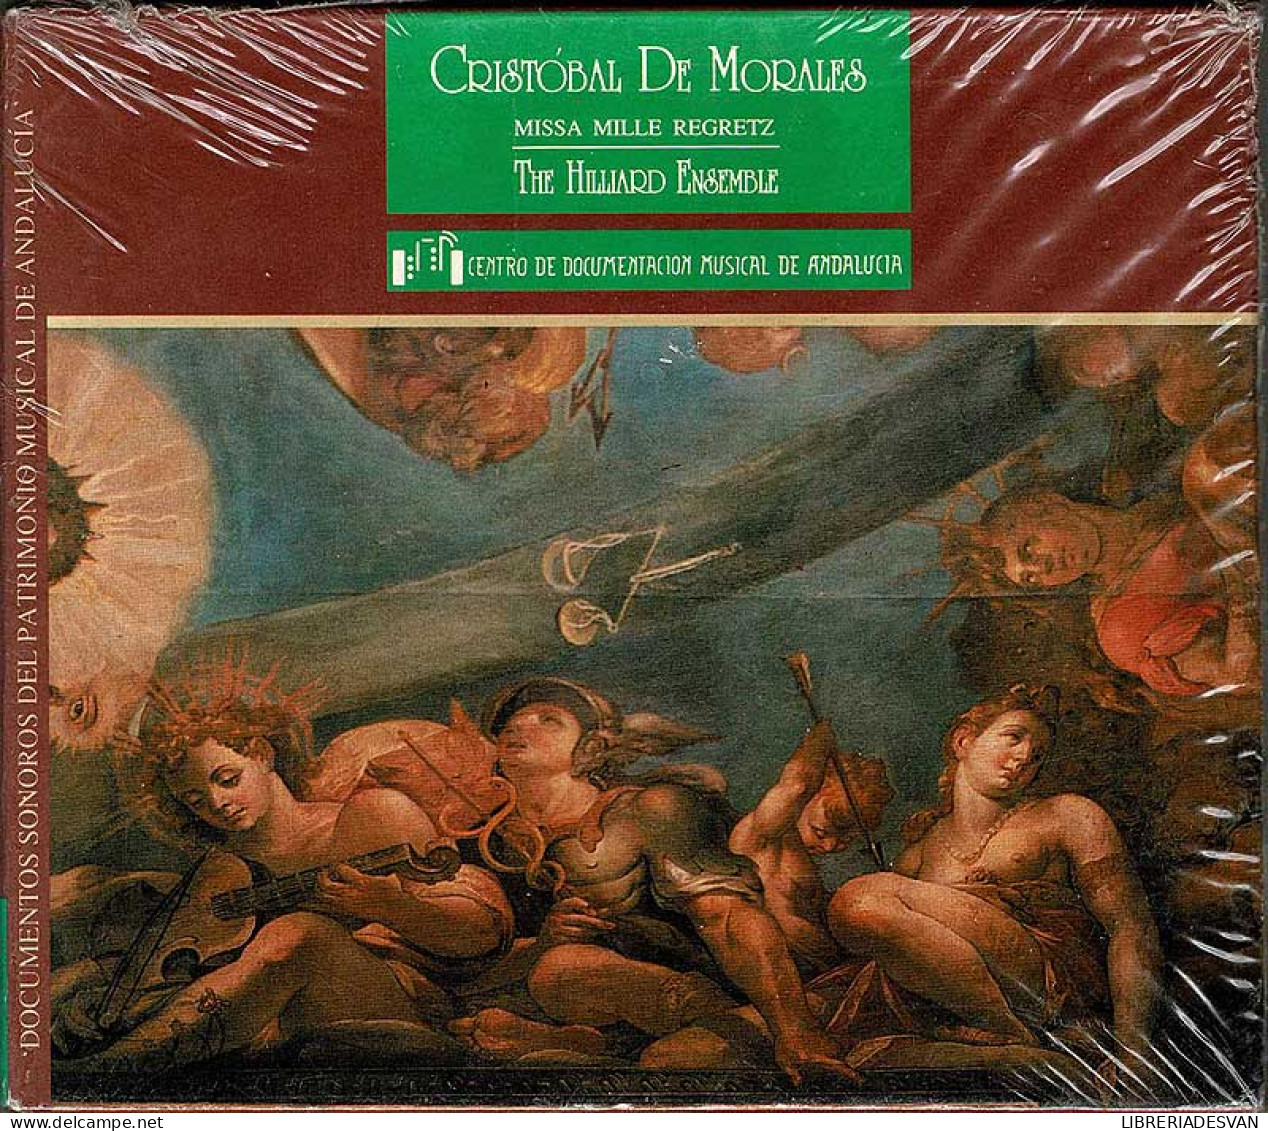 Cristóbal De Morales, The Hilliard Ensemble - Missa Mille Regretz. CD - Klassik